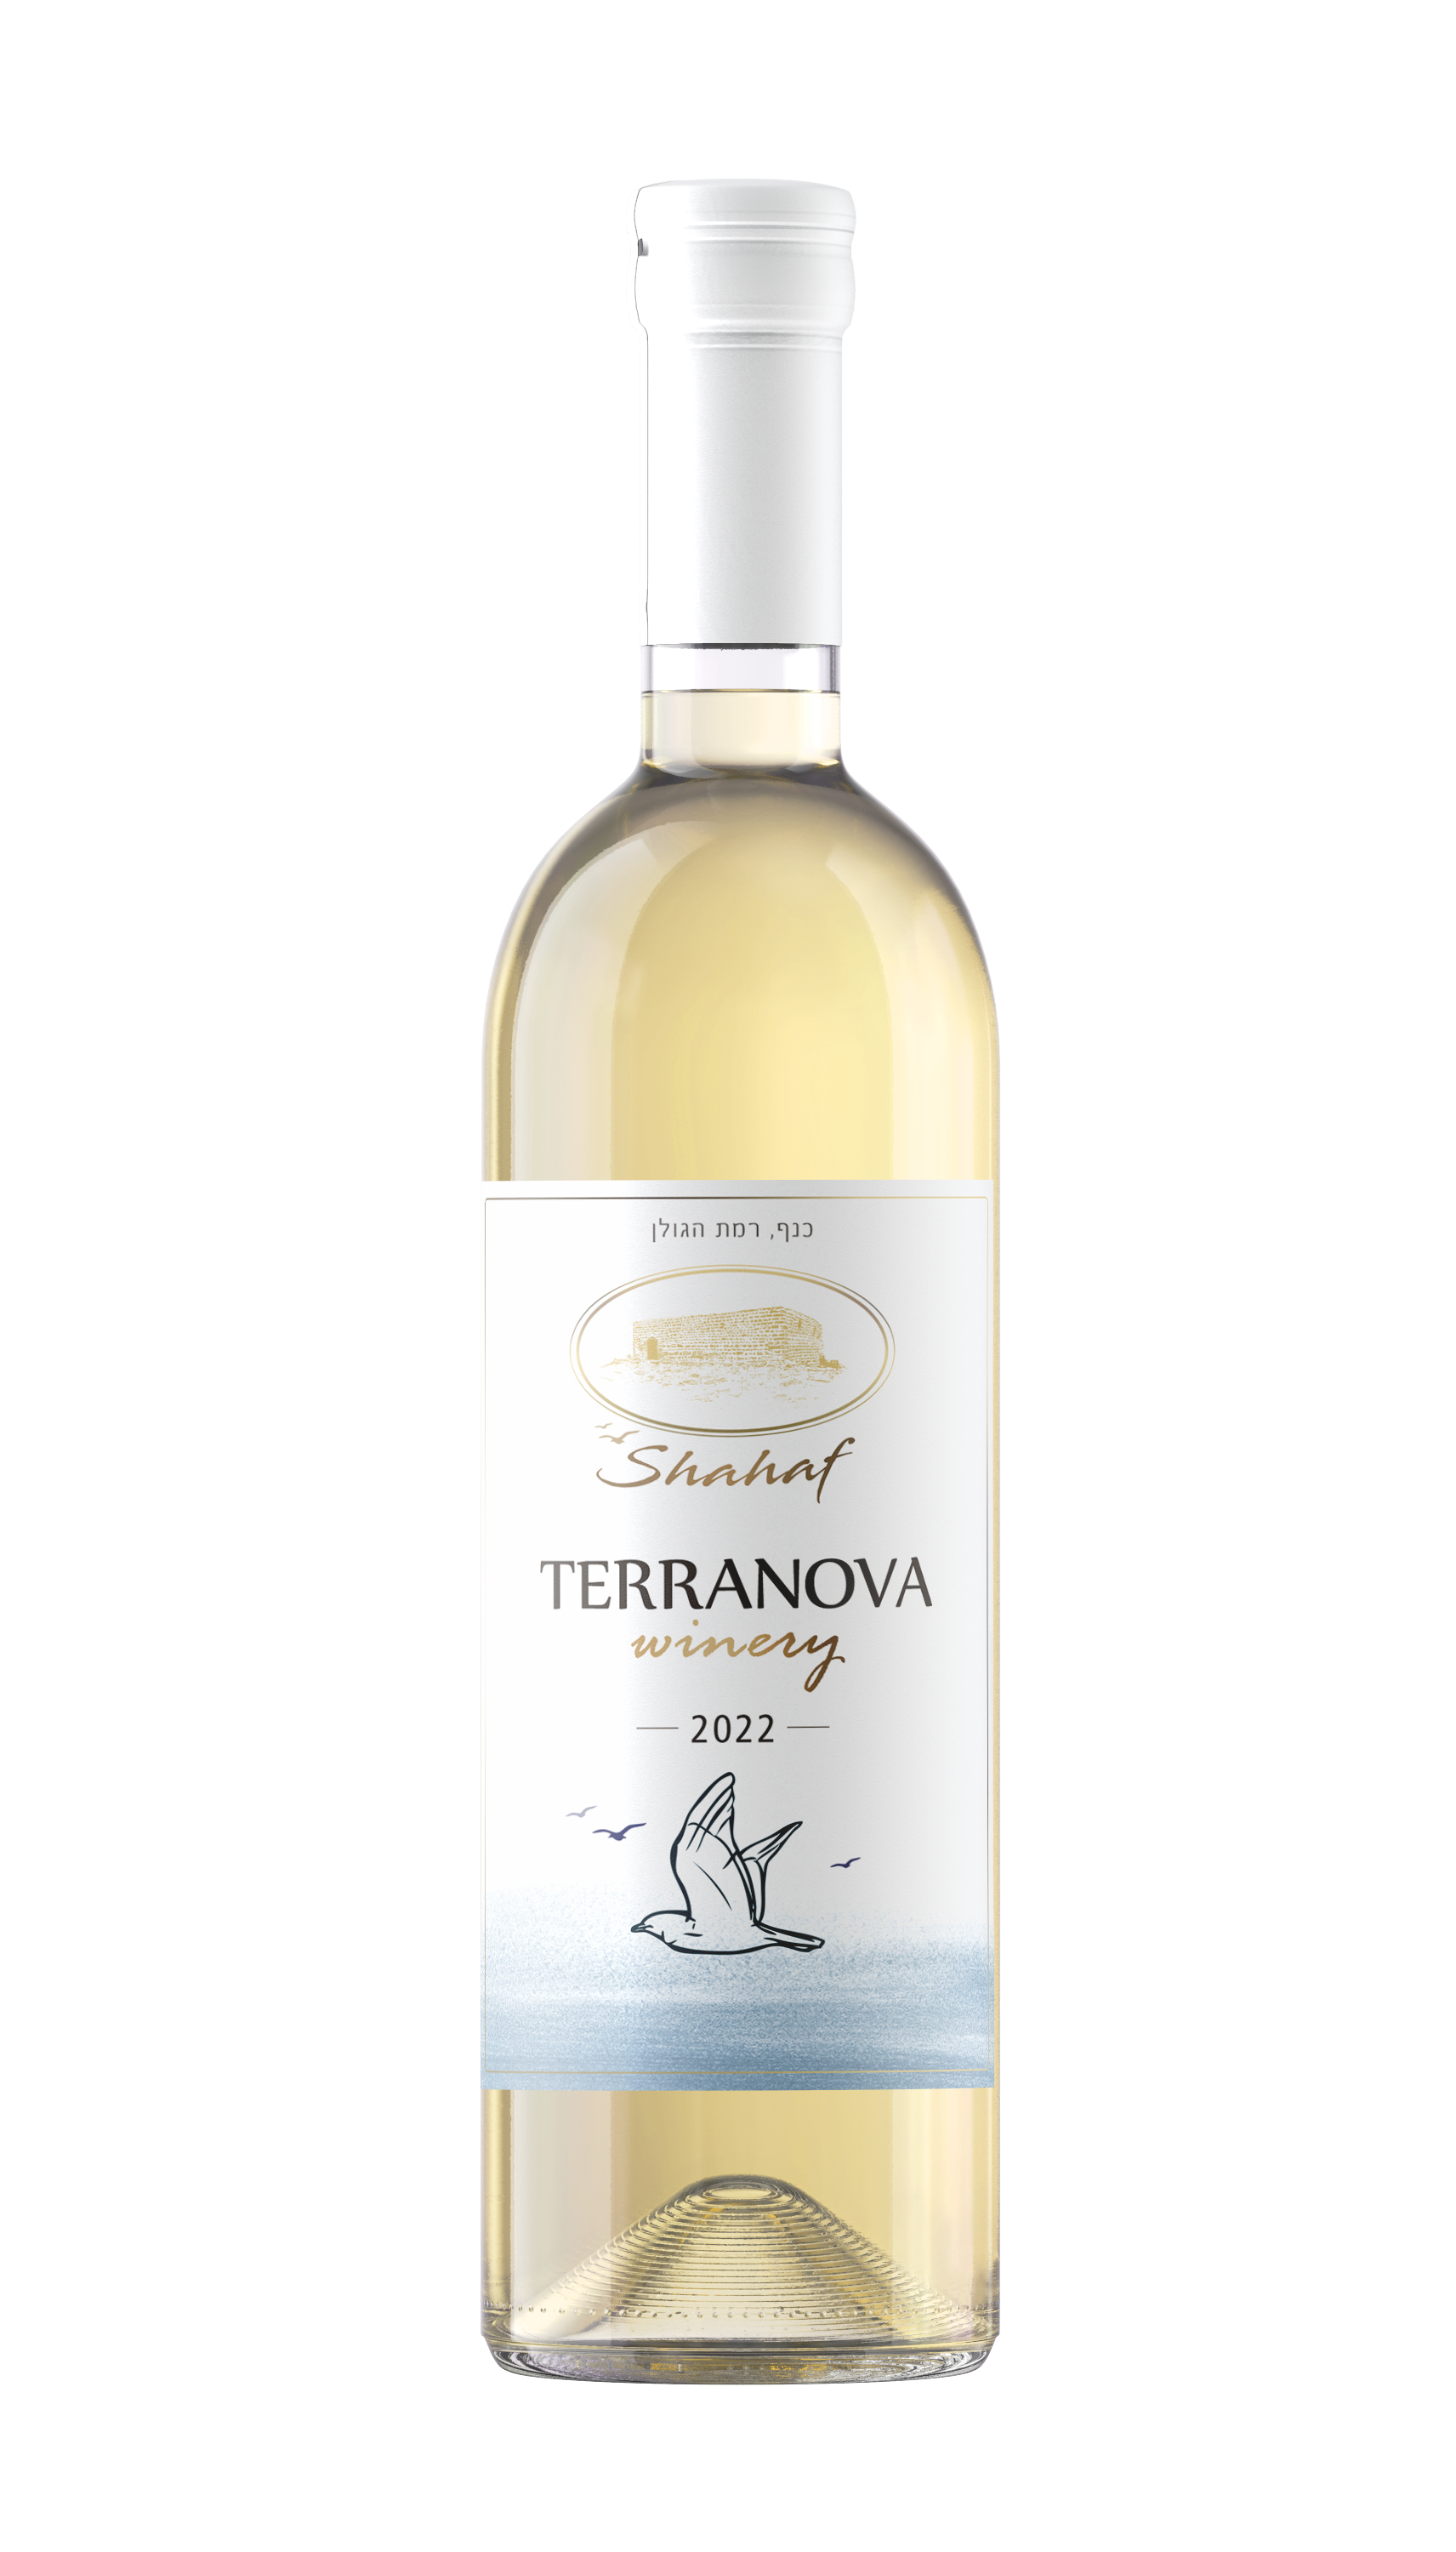 יין לבן שחף 2022 טרה נובה